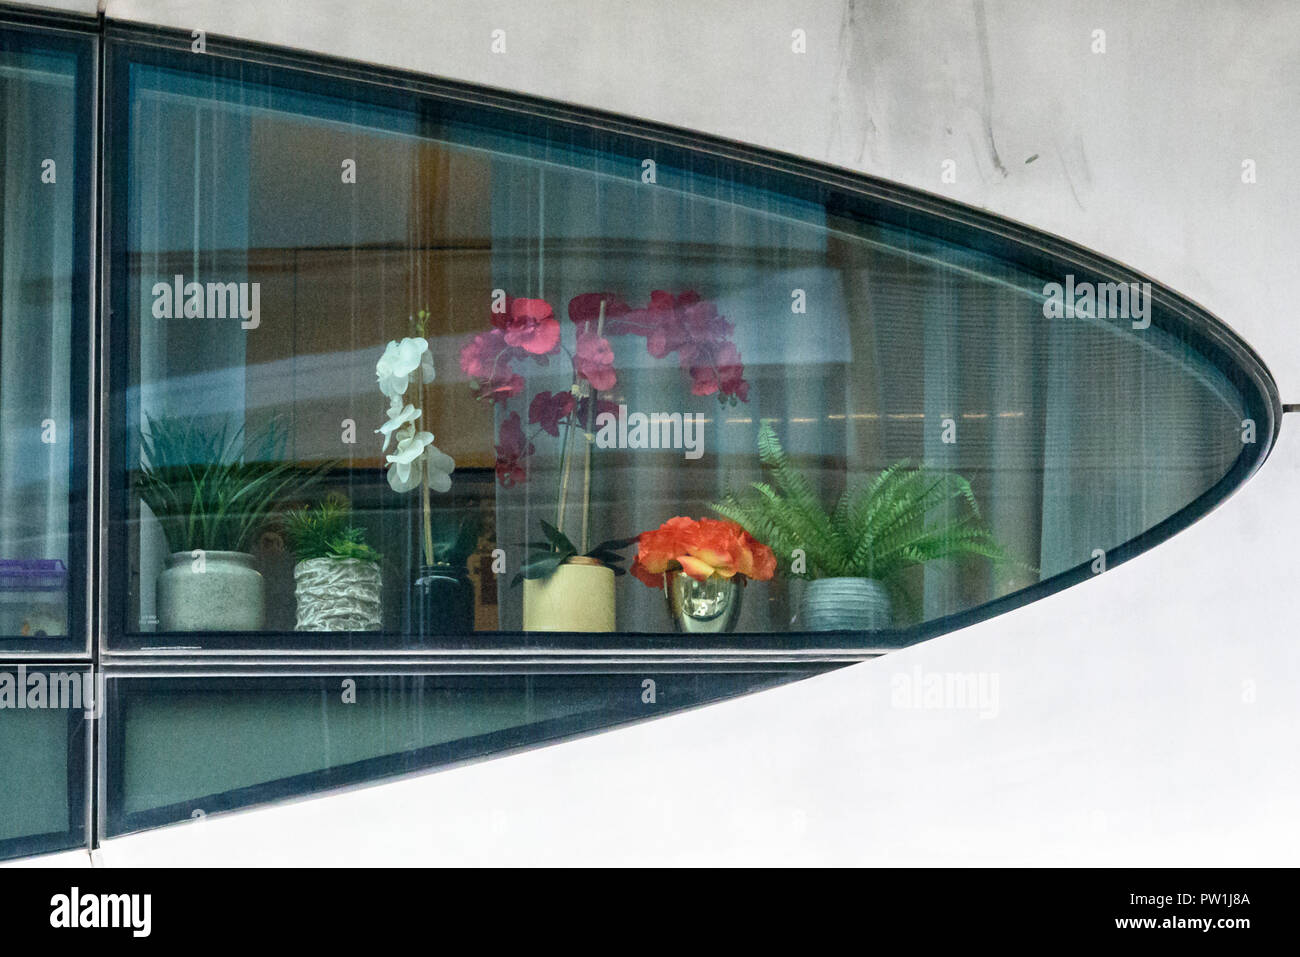 10-2018 Manhattan, New York. Dettaglio di Zaha Hadid prima New York condominio a 520 West 28th Street. Fiori in forma strana finestra. Foto: © Simon Foto Stock